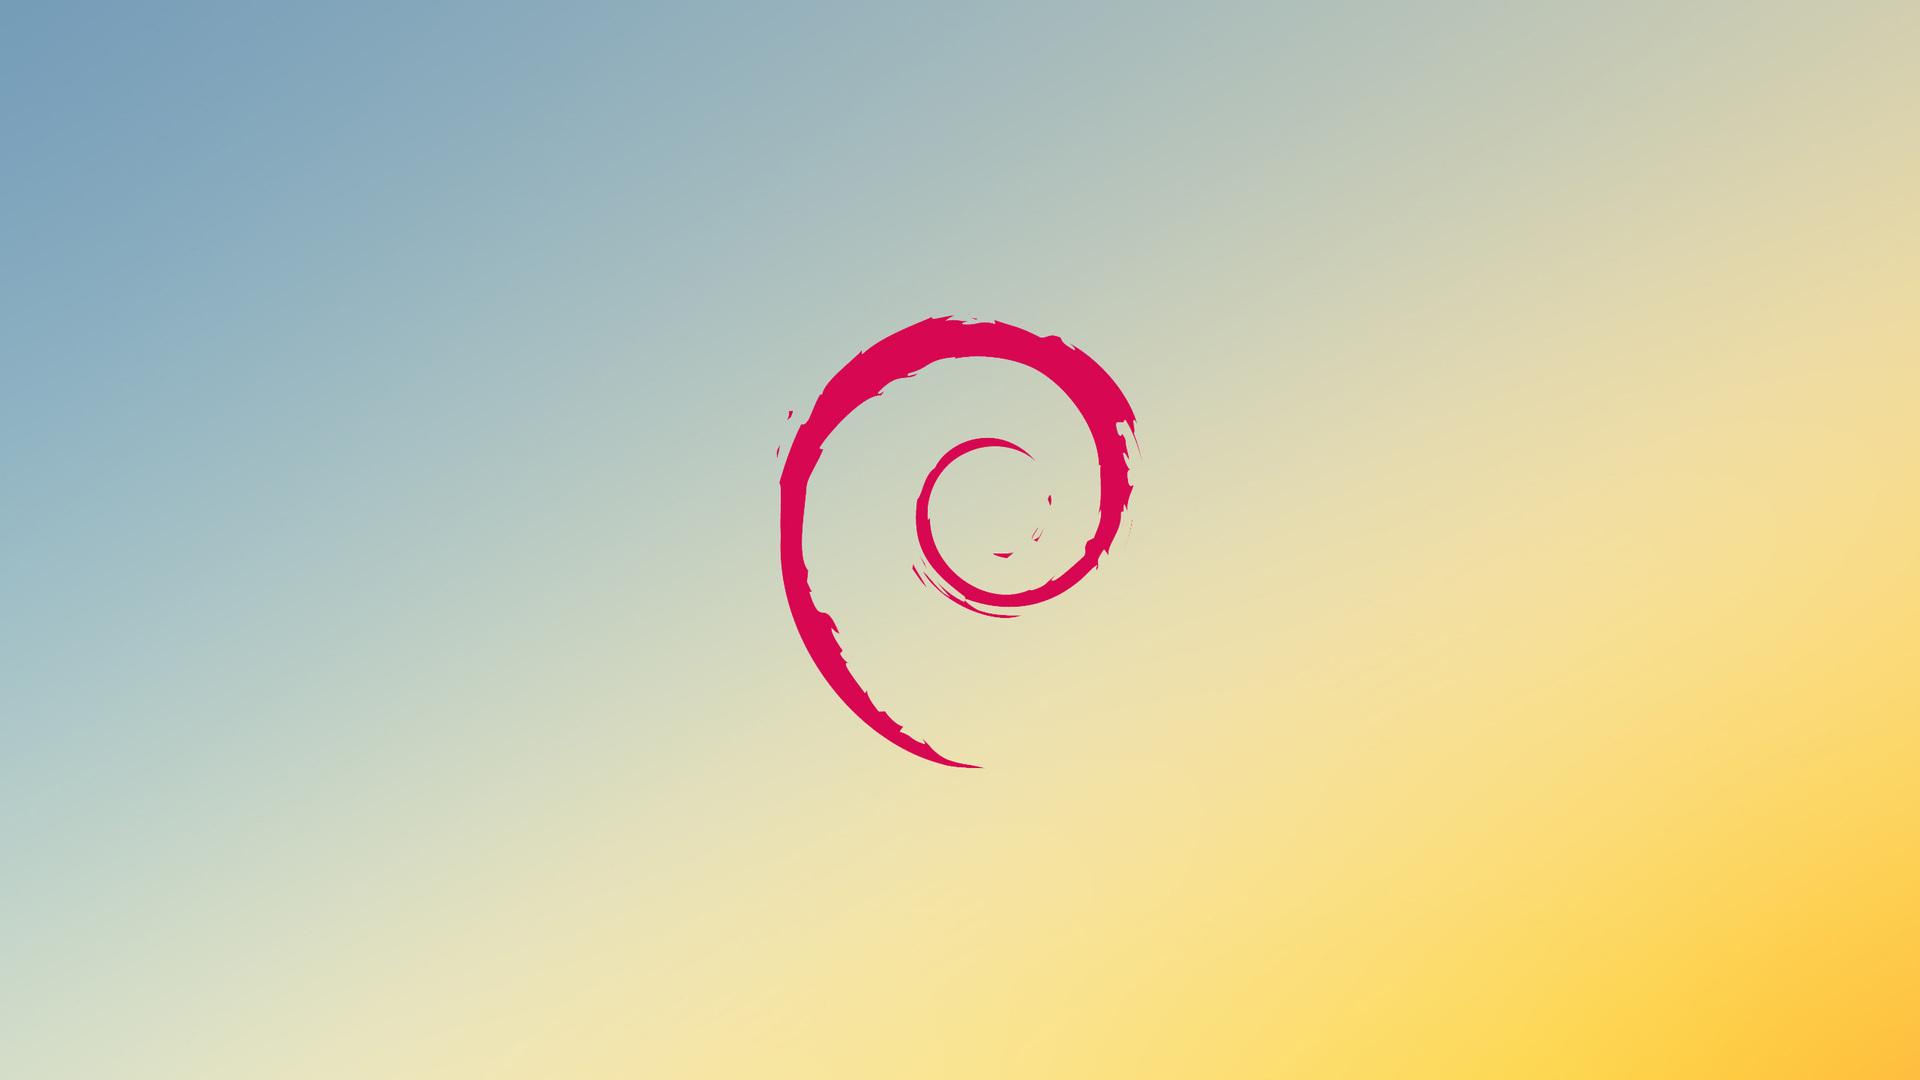 Jakiej dystrybucji Linuxa jest to logo?